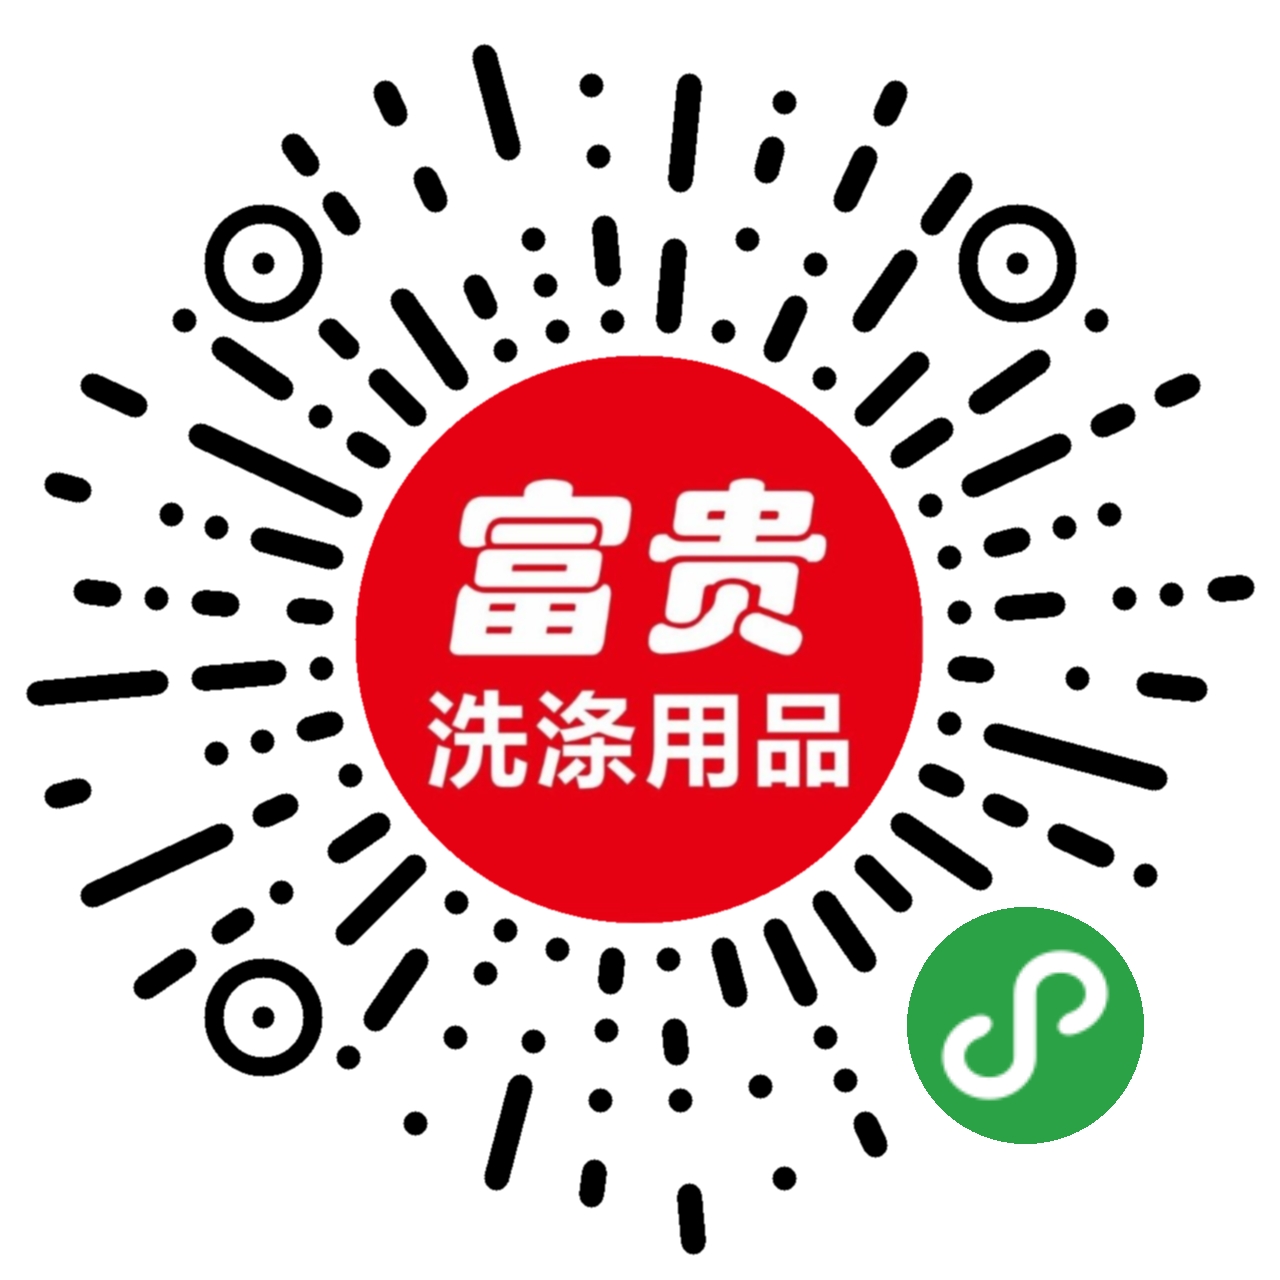 湖南省长沙bt365体育平台官网洗涤用品有限公司